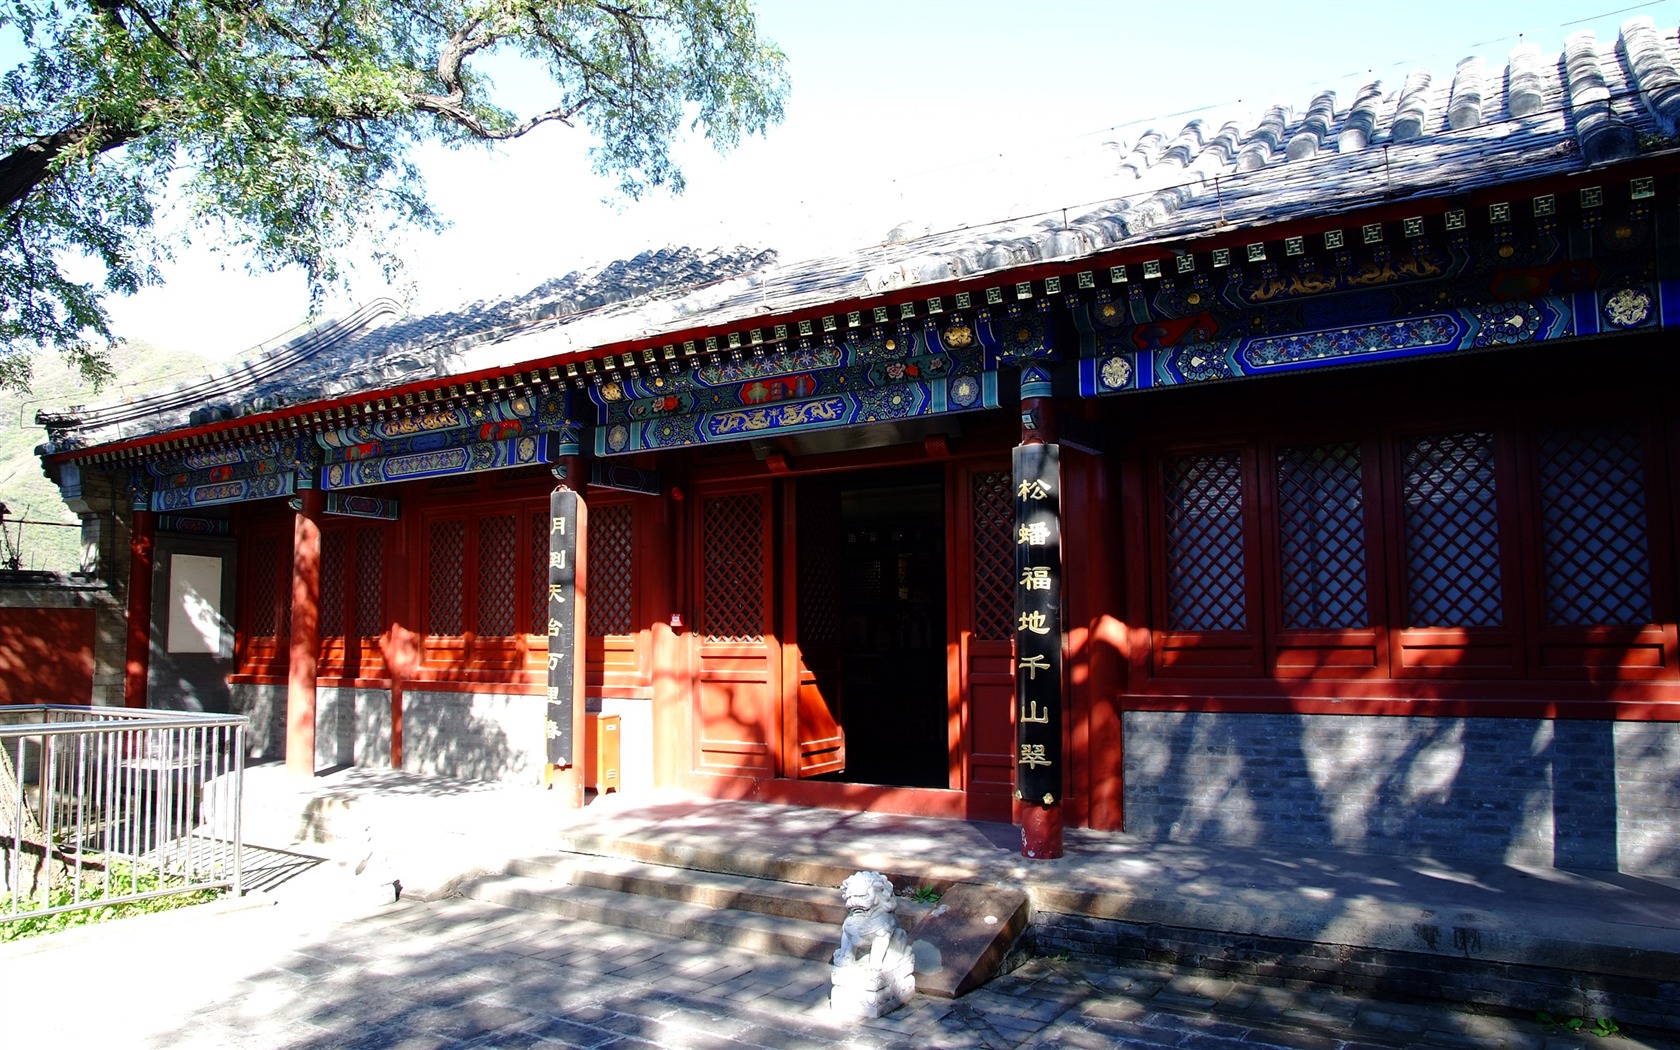 チャリティー寺Jingxiのモニュメント (鉄筋の作品) #12 - 1680x1050